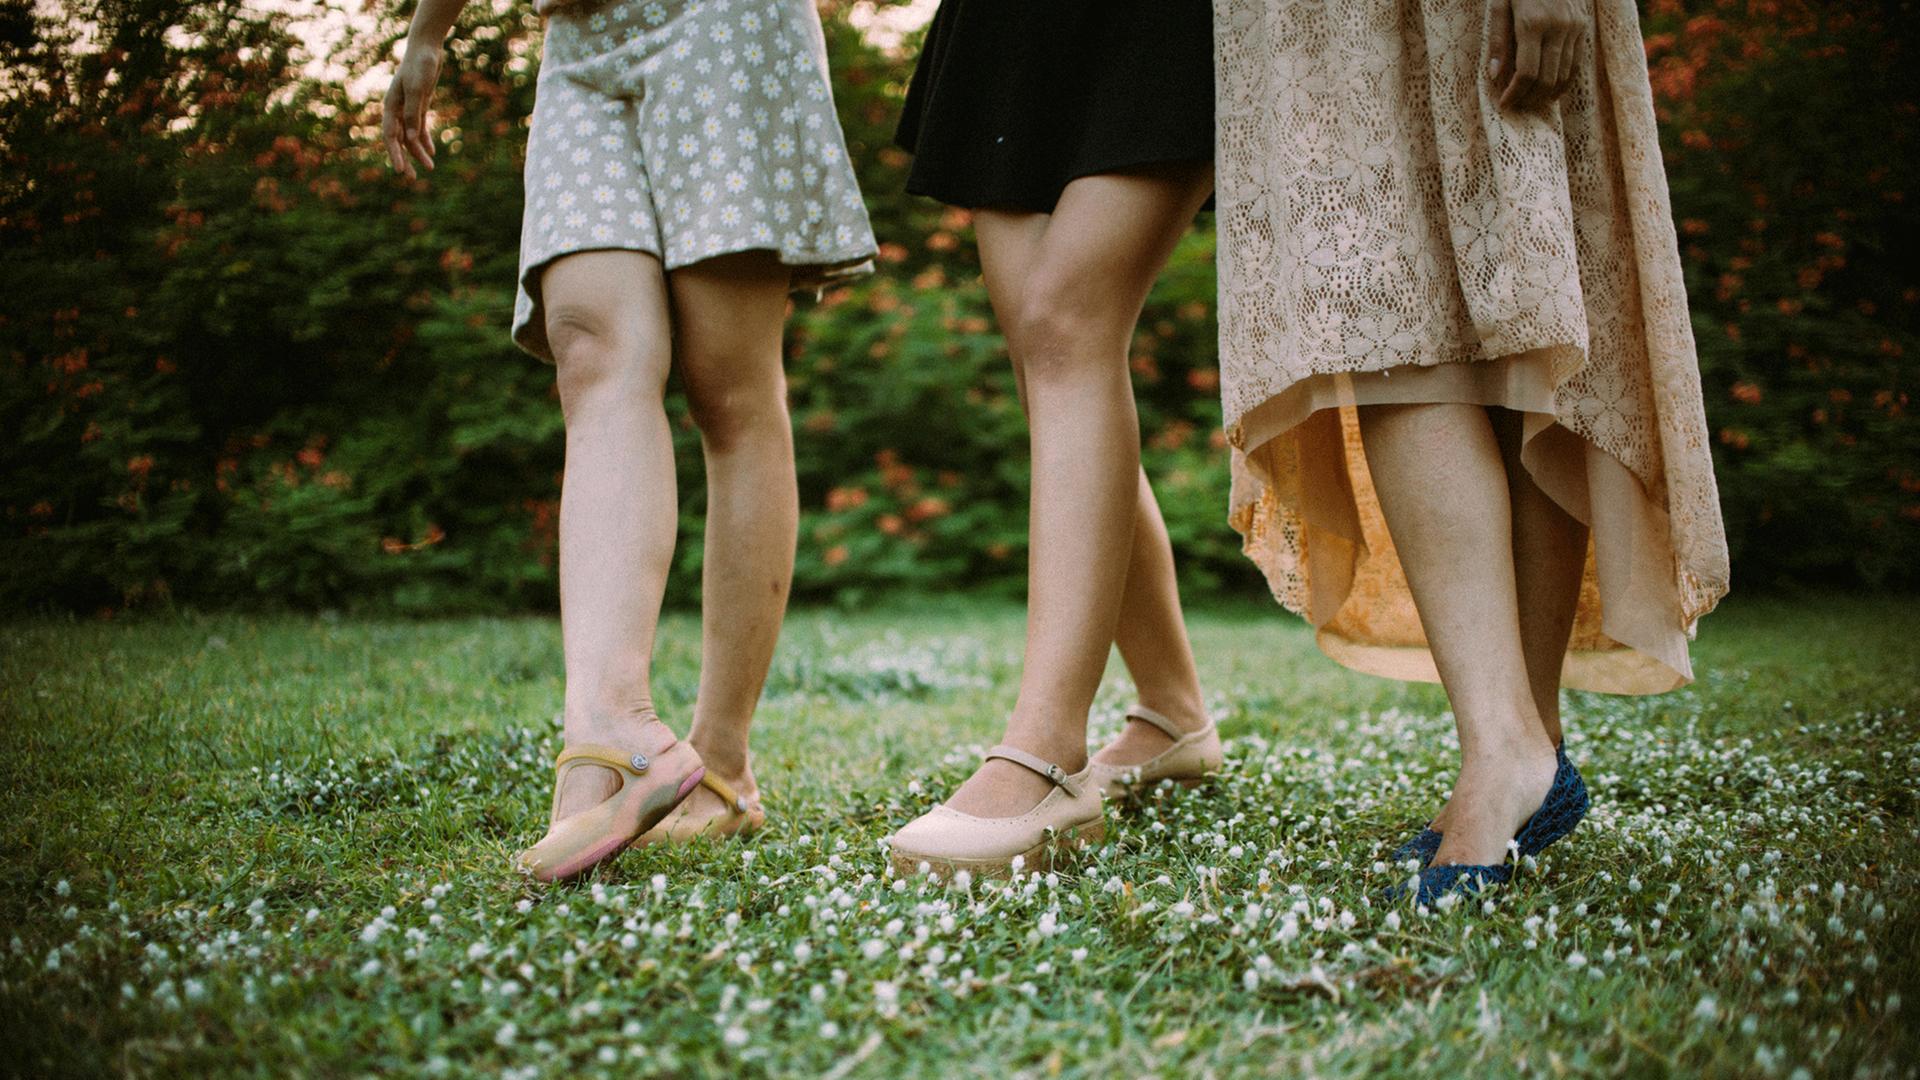 Die nackten Beine von drei Frauen in Röcken und Schuhen sind zu sehen. Sie spazieren über eine Wiese.